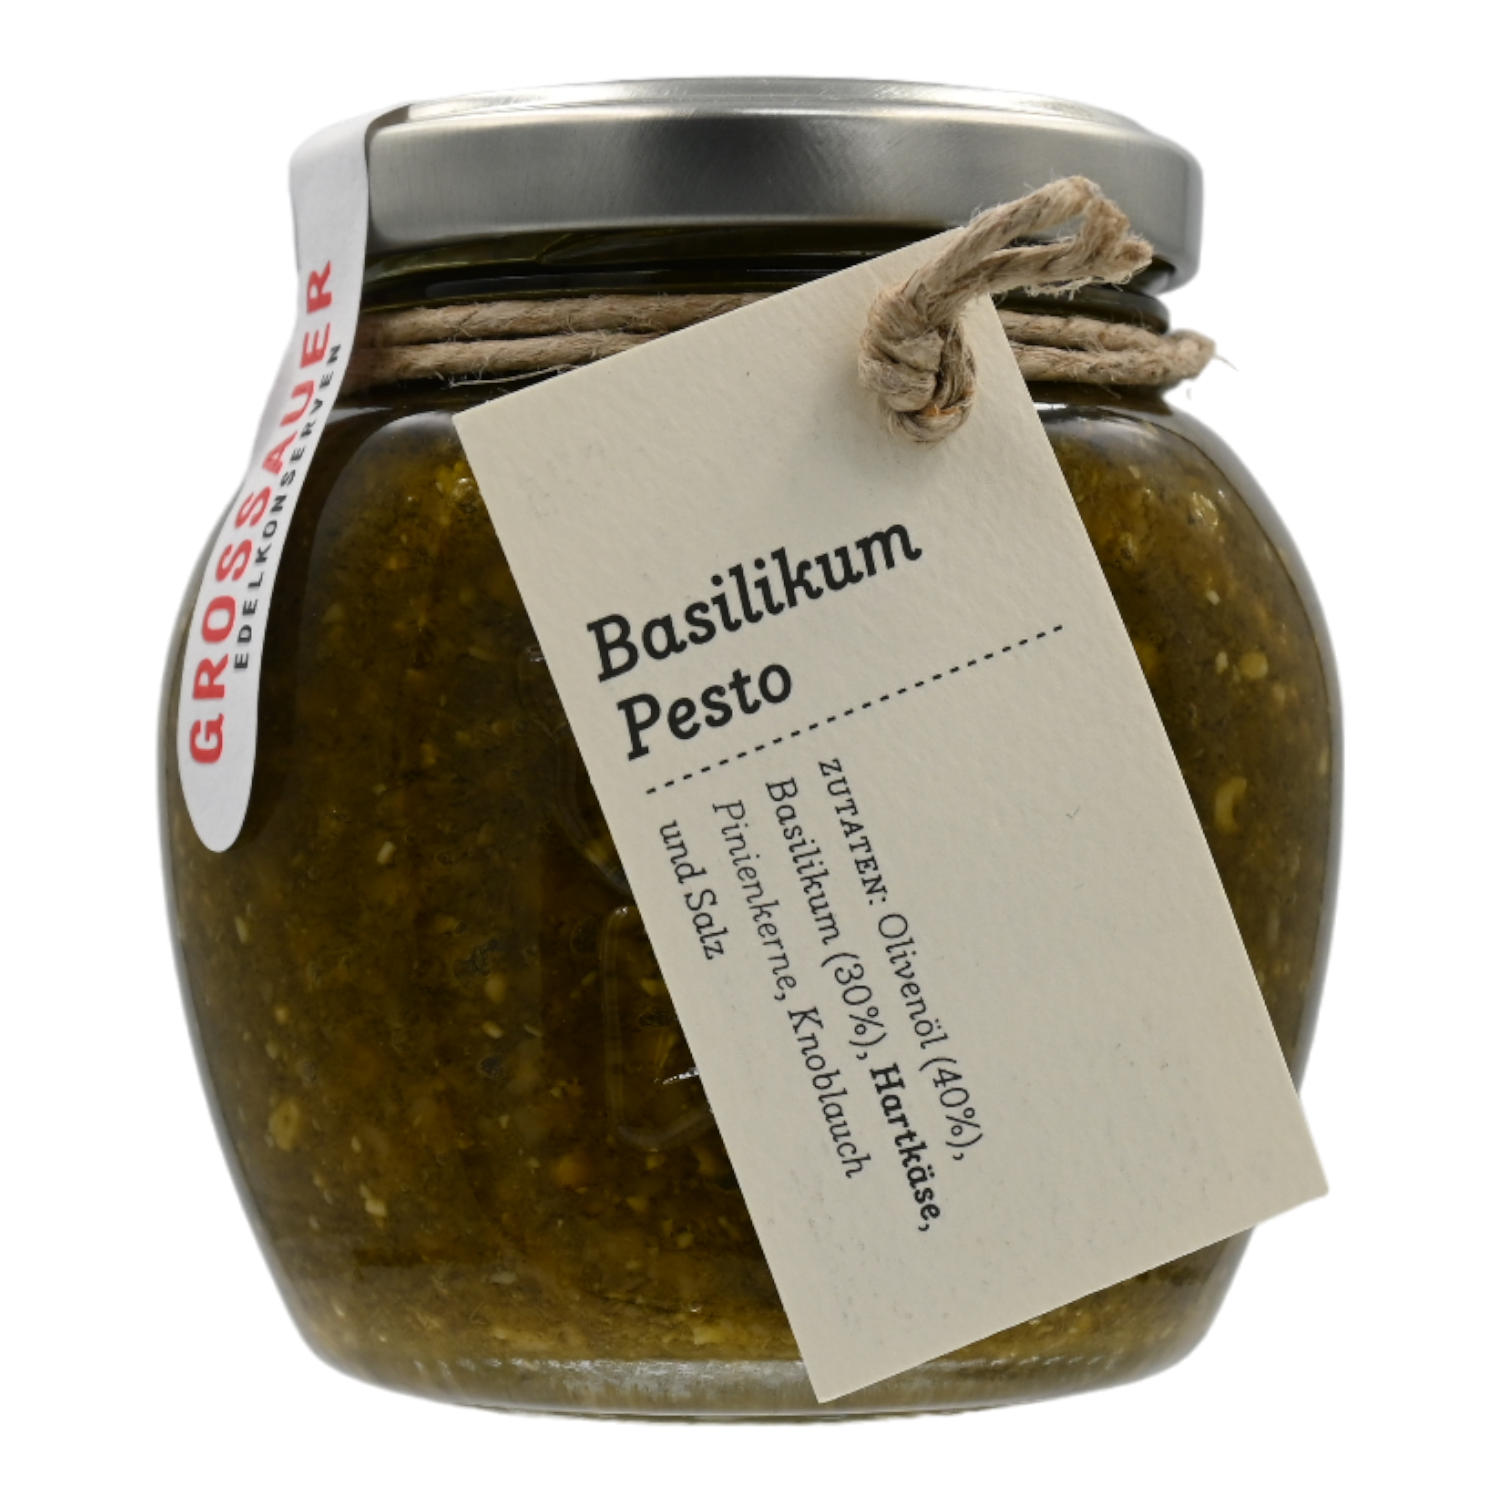 Basilikum-Pesto, Grossauer Edelkonserven 0,18 kg